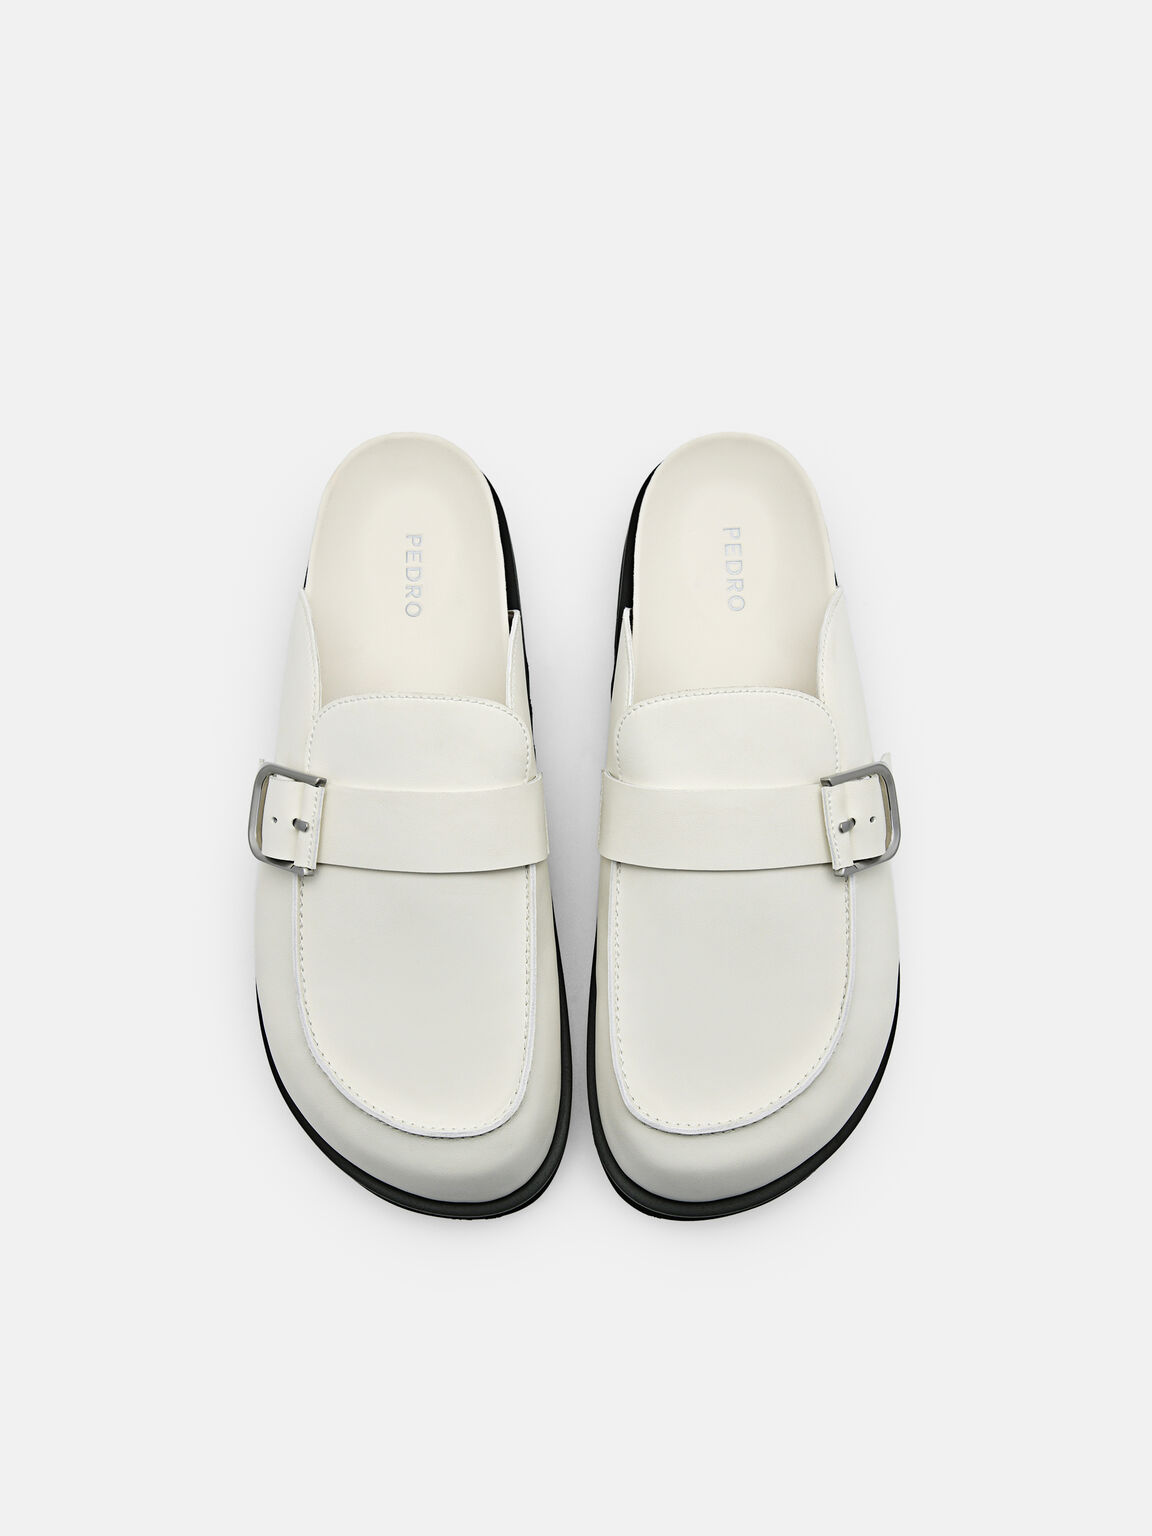 Helix Slip-On Sandals, White